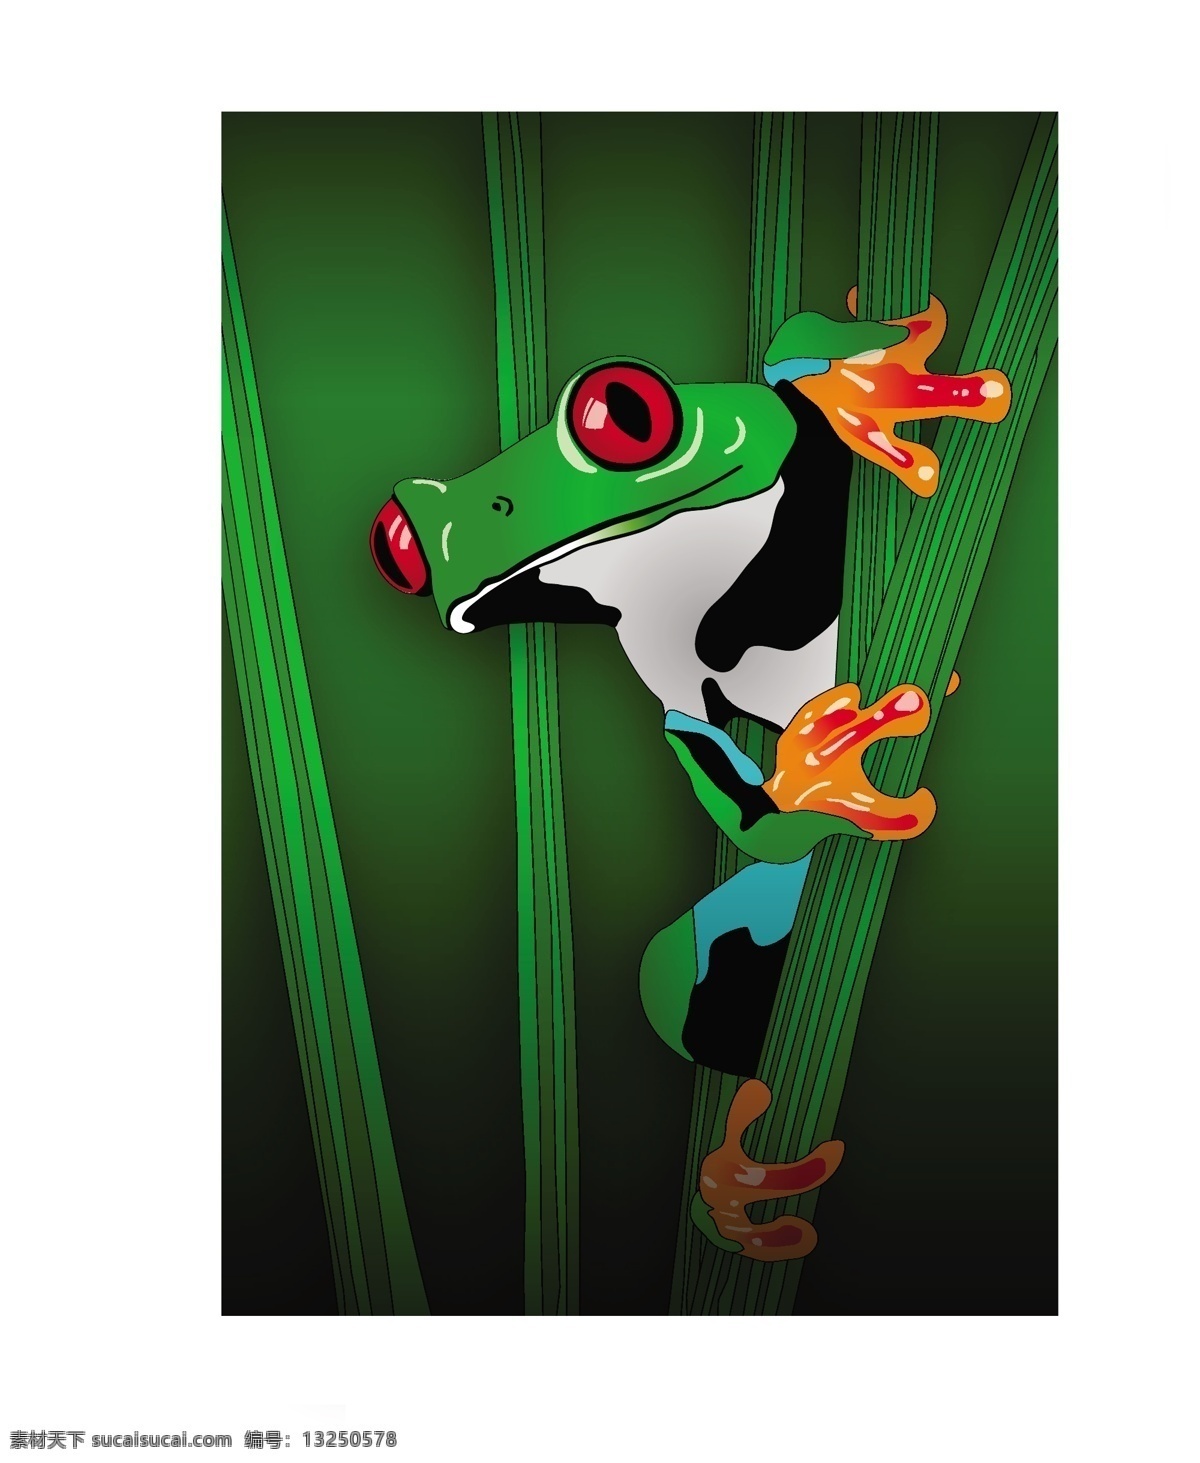 草地 上 矢量 图形 光泽 绿色 青蛙 web 背景 草 插画 创意 免费 质量 病 媒 生物 时尚 独特的 原始的 高质量 新鲜的 红色的眼睛 沼泽 绿色的小青蛙 向量 矢量图